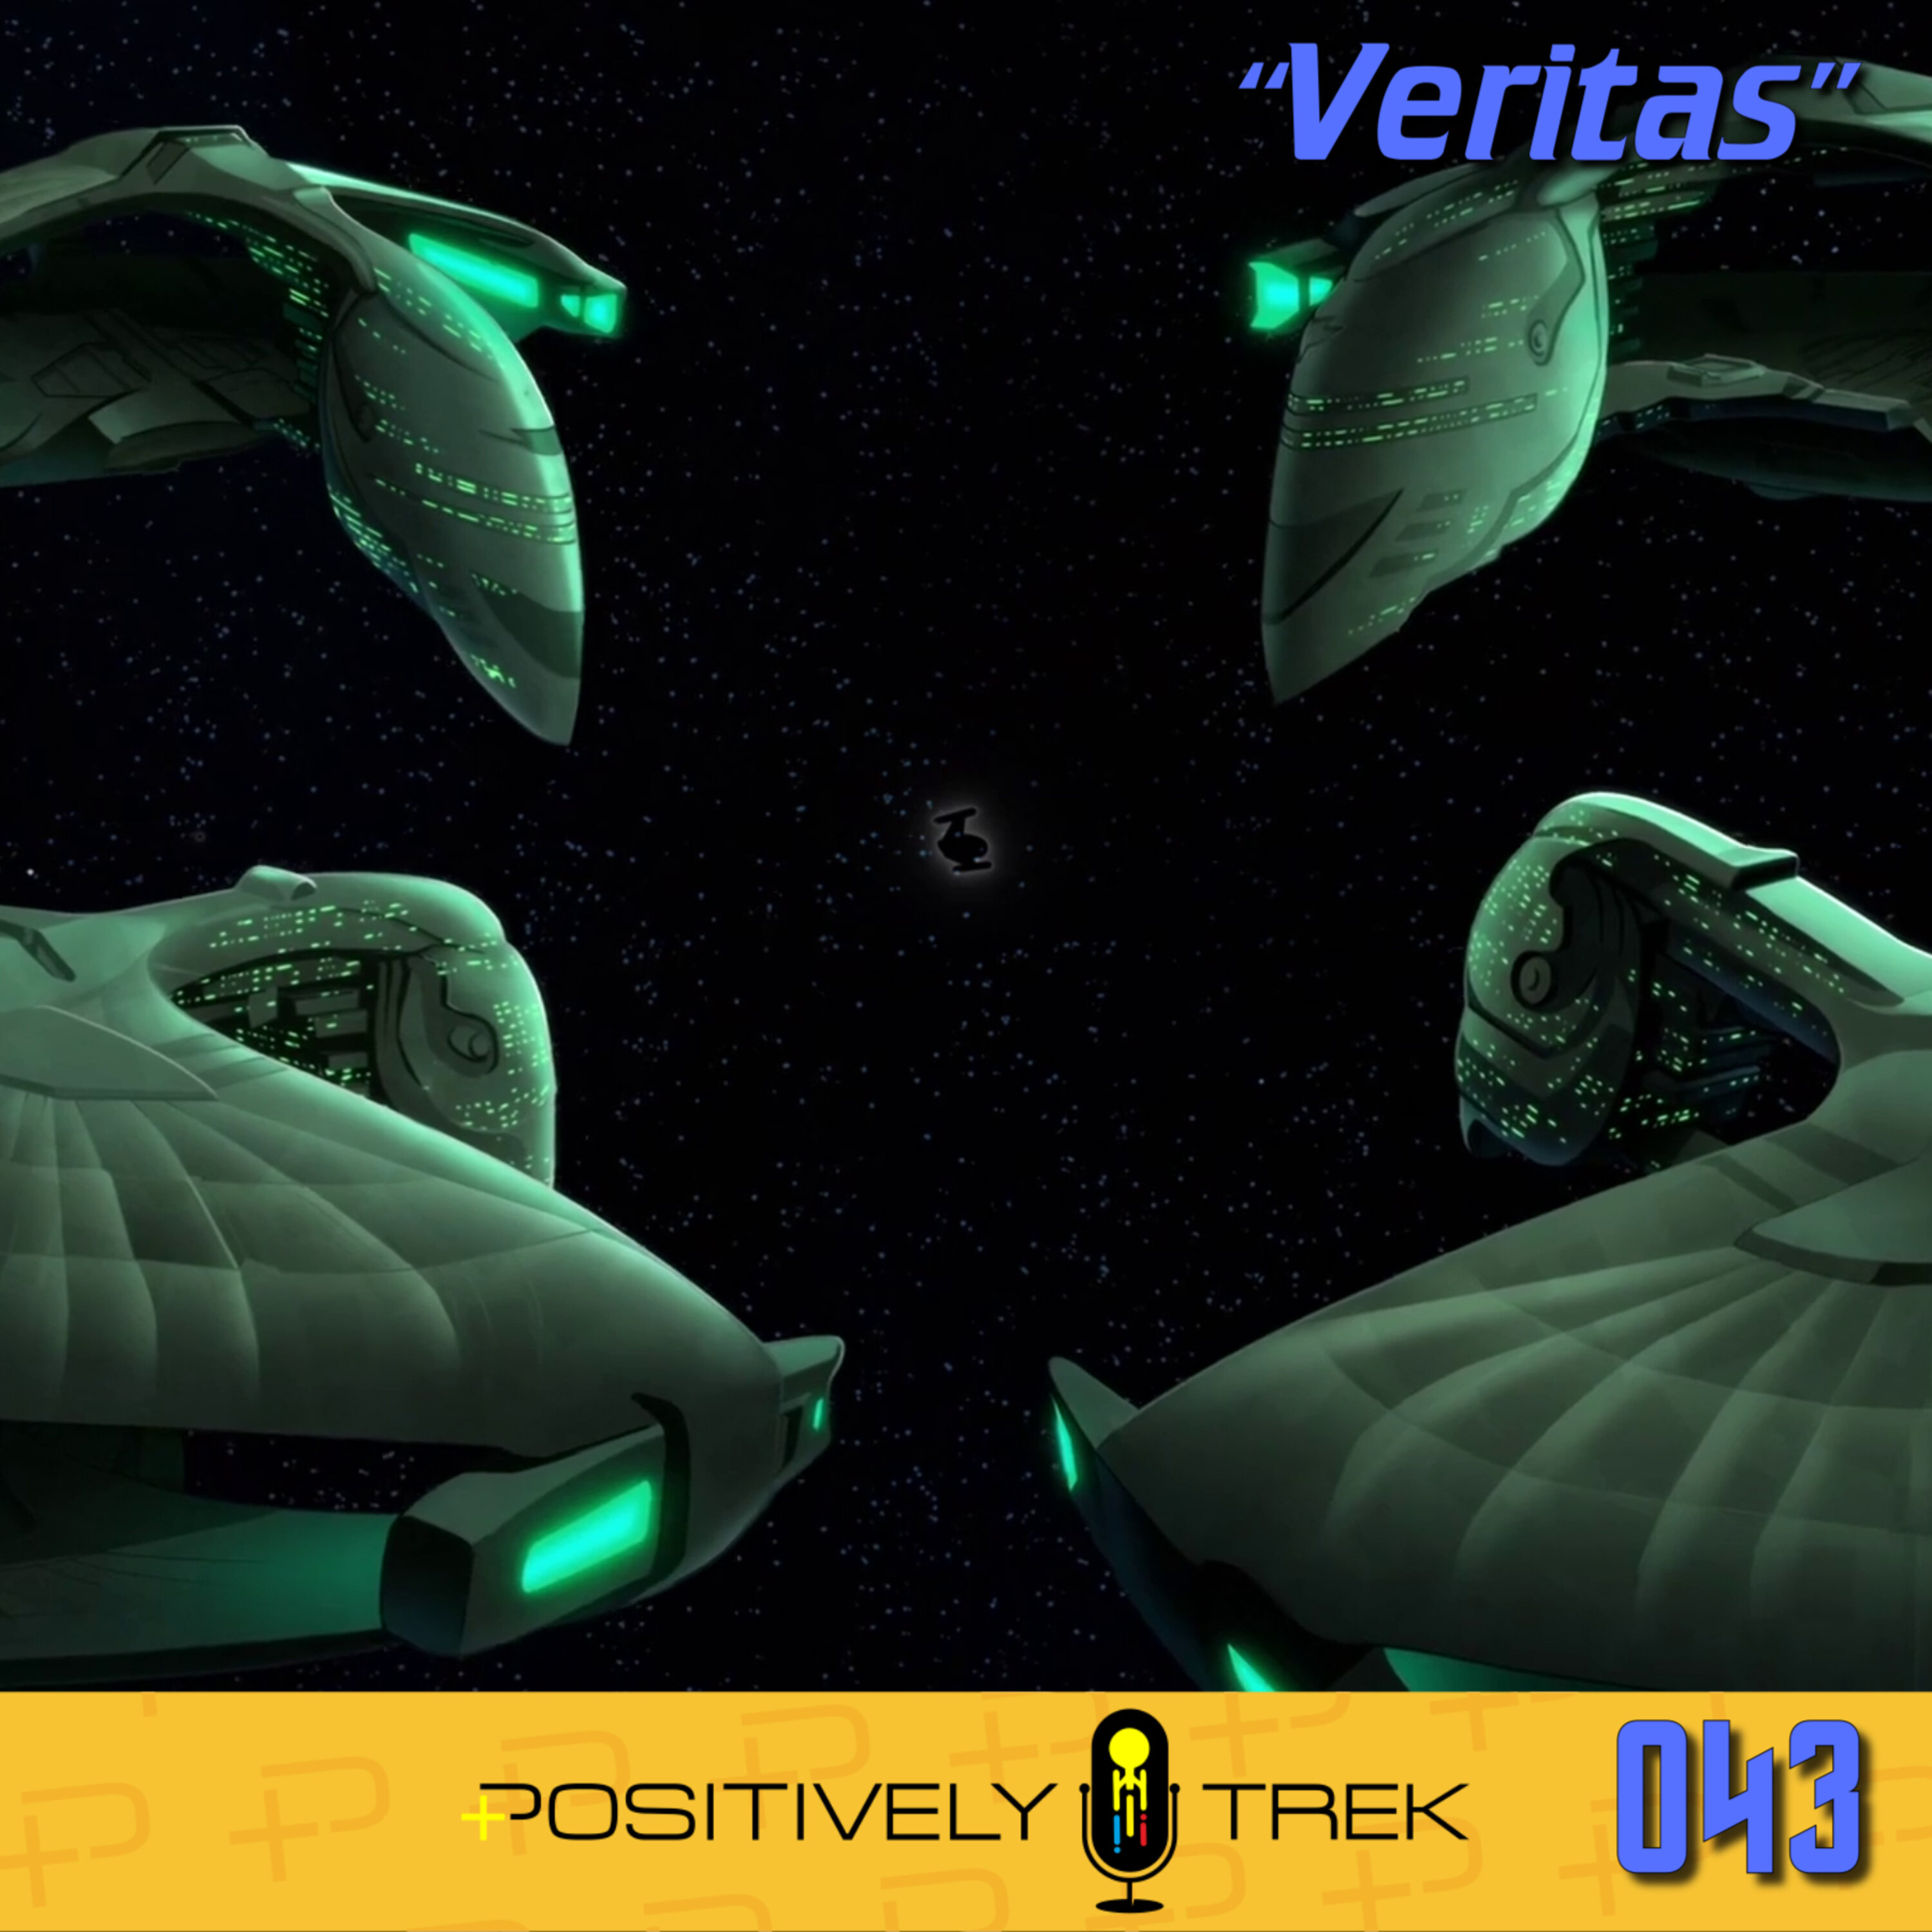 Lower Decks Review: “Veritas” (1.08) Image